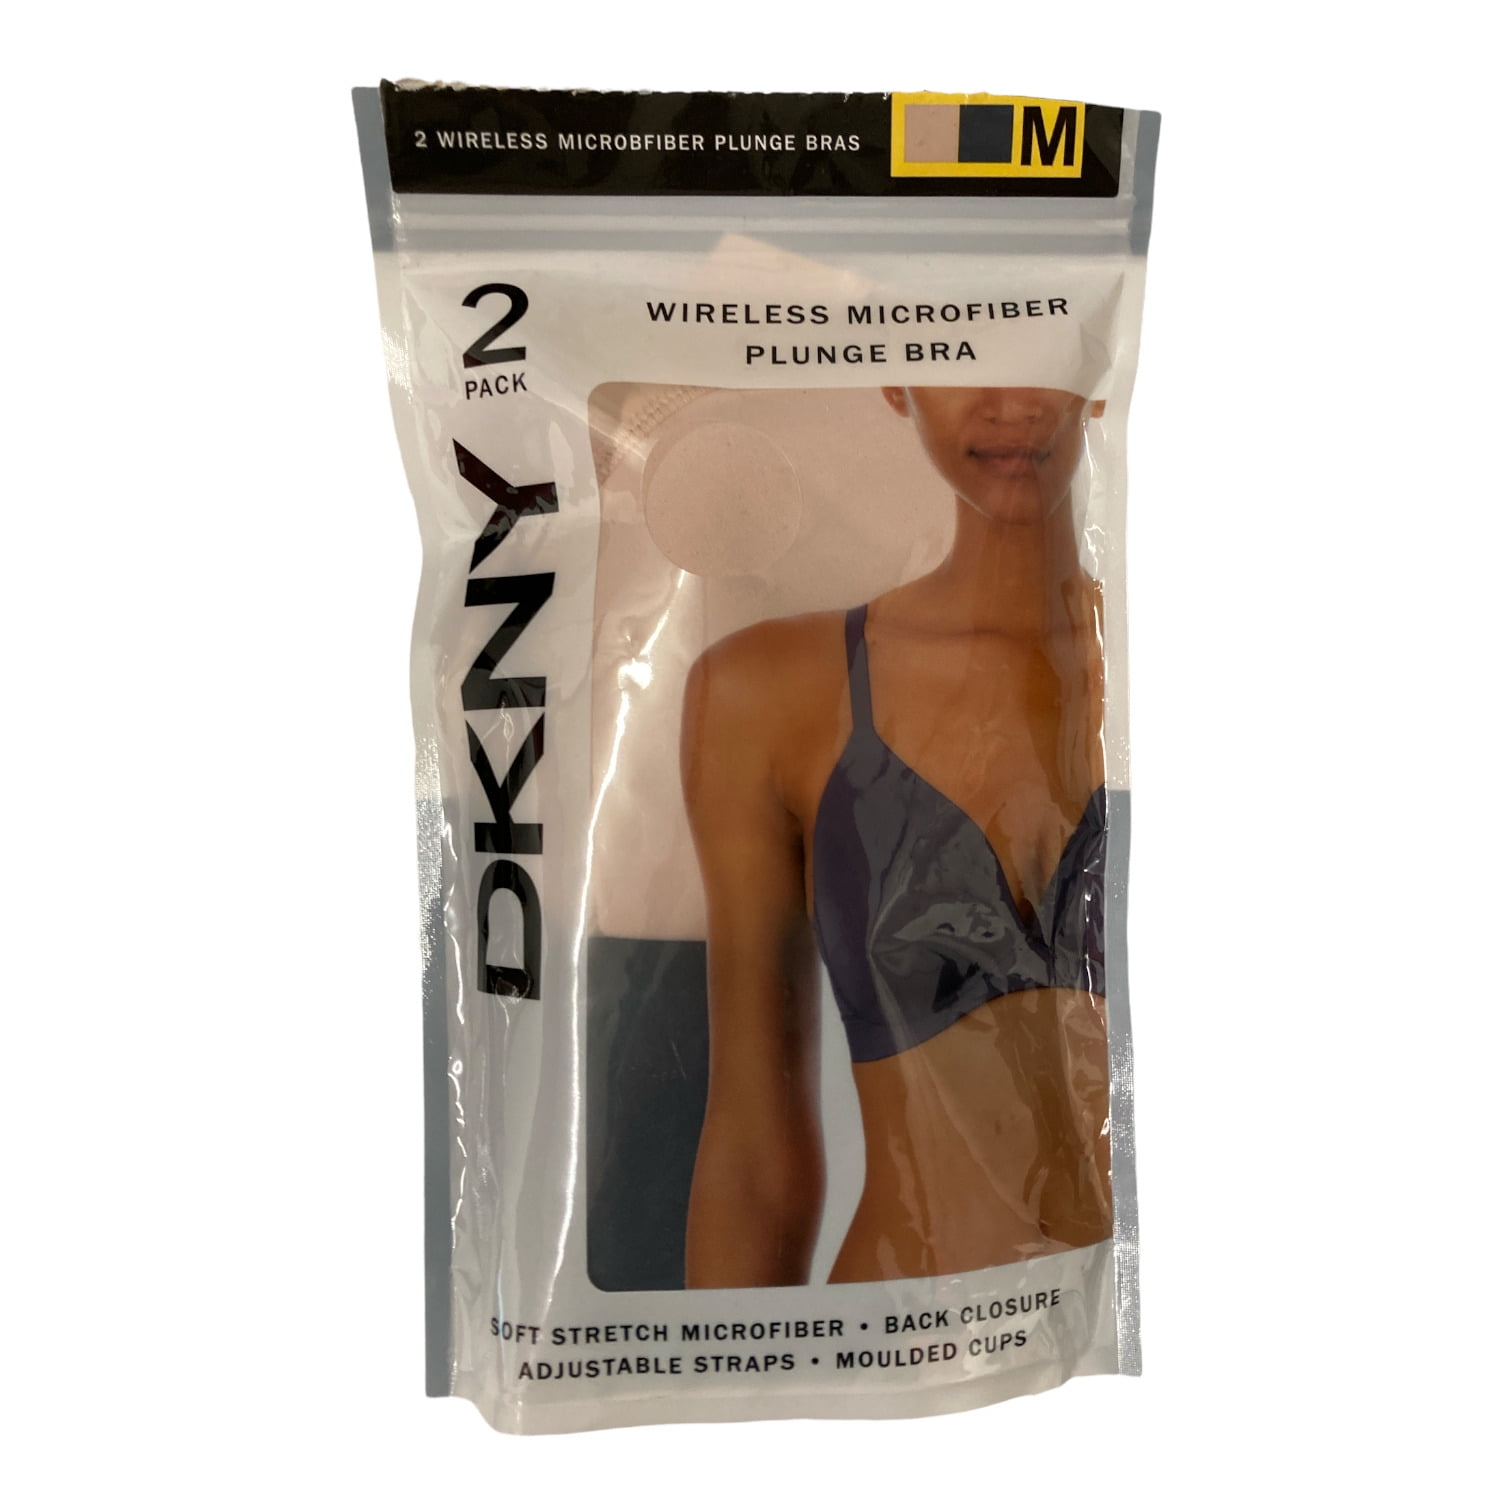 DKNY Women's Wireless Soft Stretch Microfiber Plunge Bra (Ink/Sand, L) 